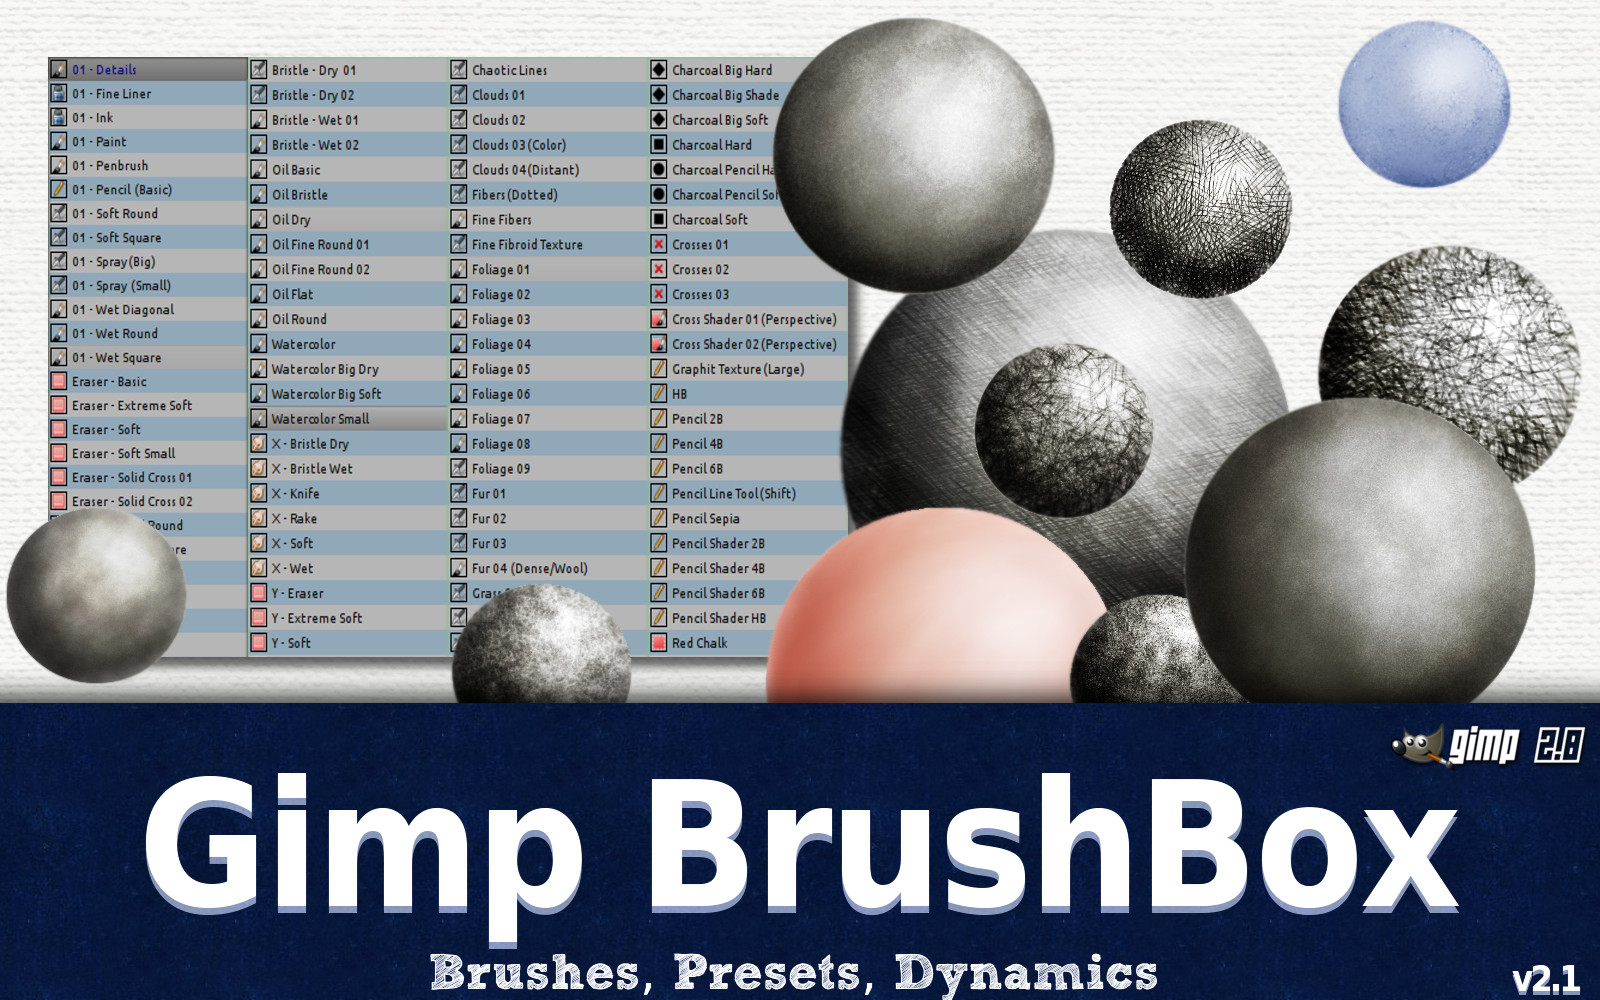 The Gimp BrushBox v2.1